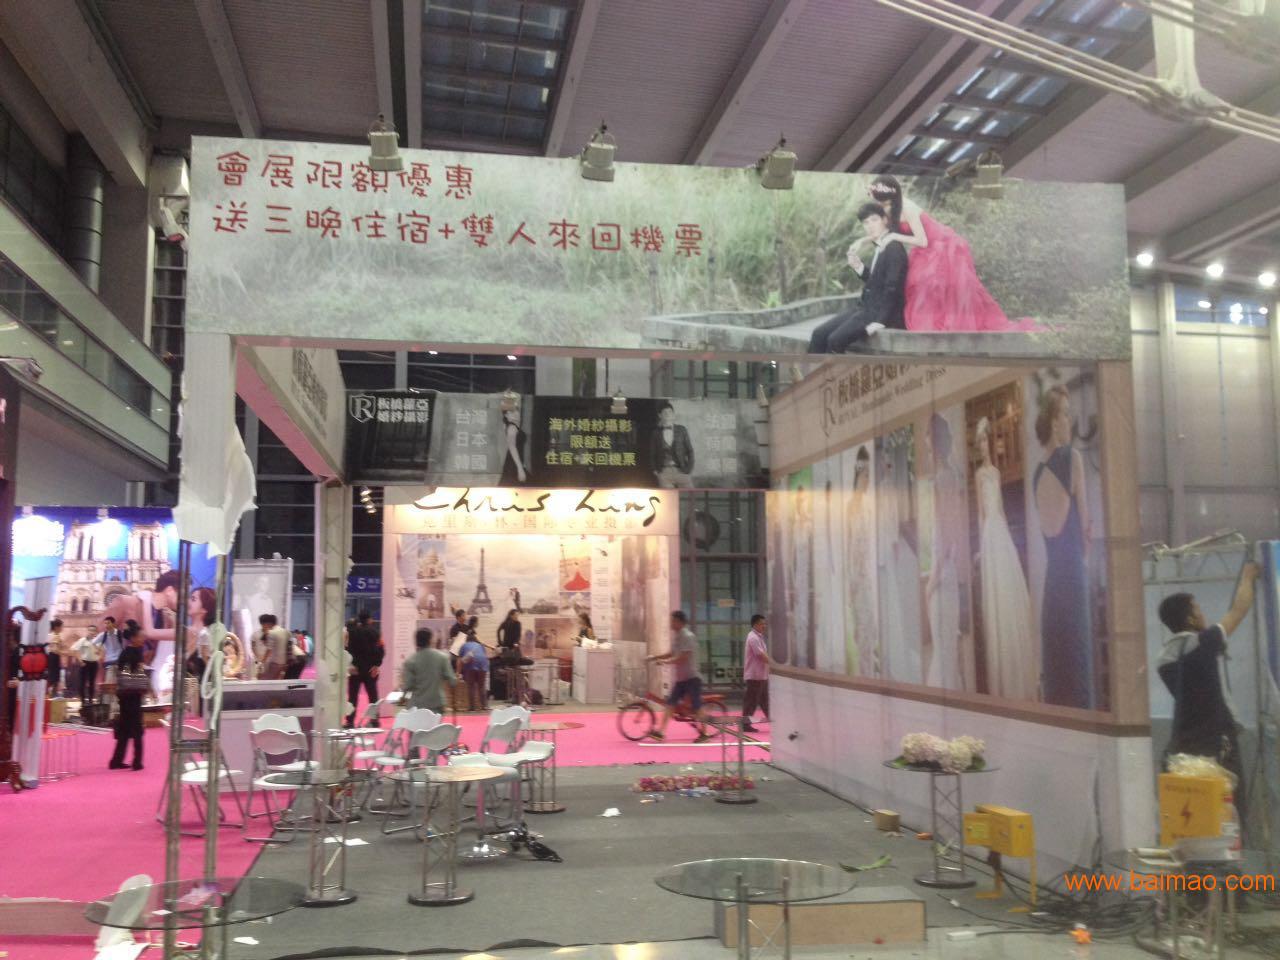 承接深圳会展中心国际光电博览会展位搭建展台布置服务